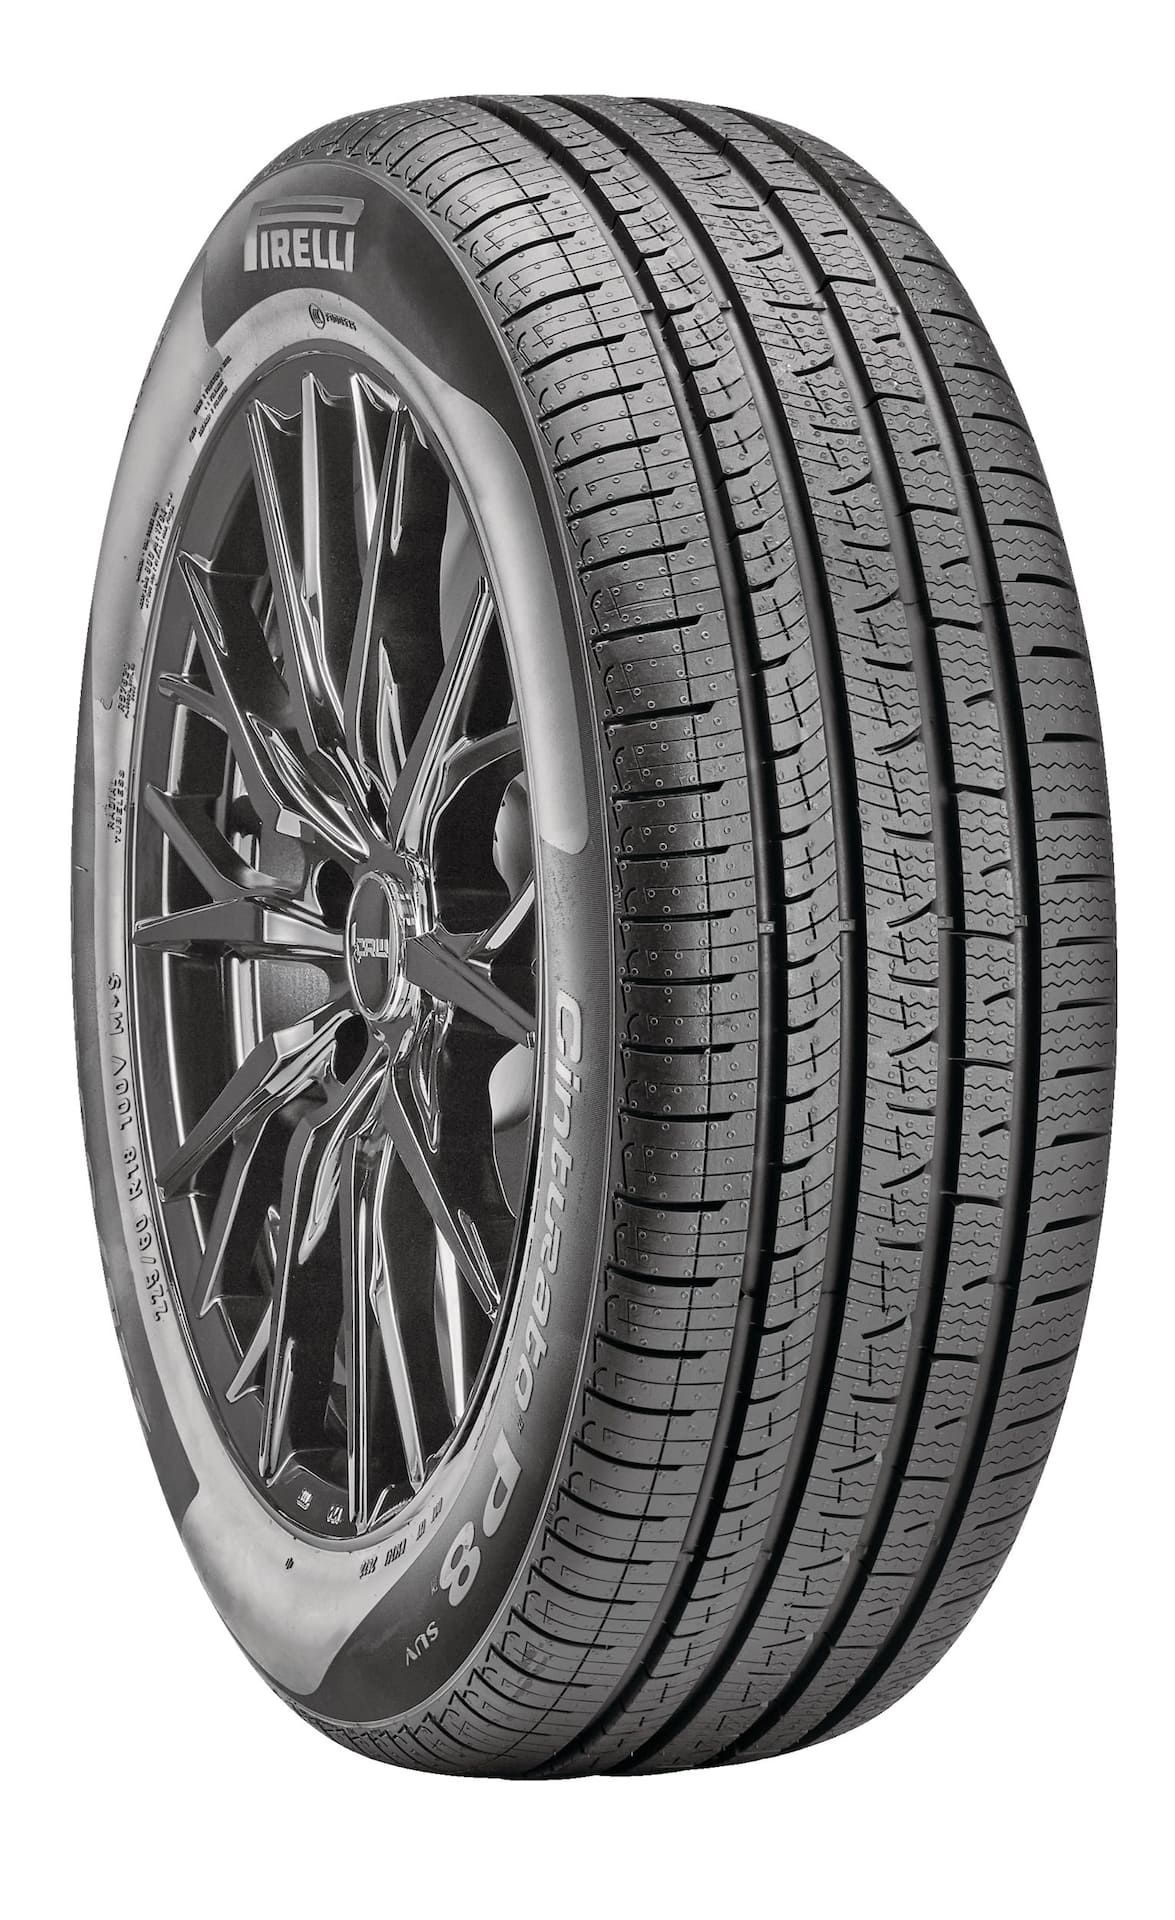 Pirelli P8 Cinturato All Season Tire for CUV / SUV